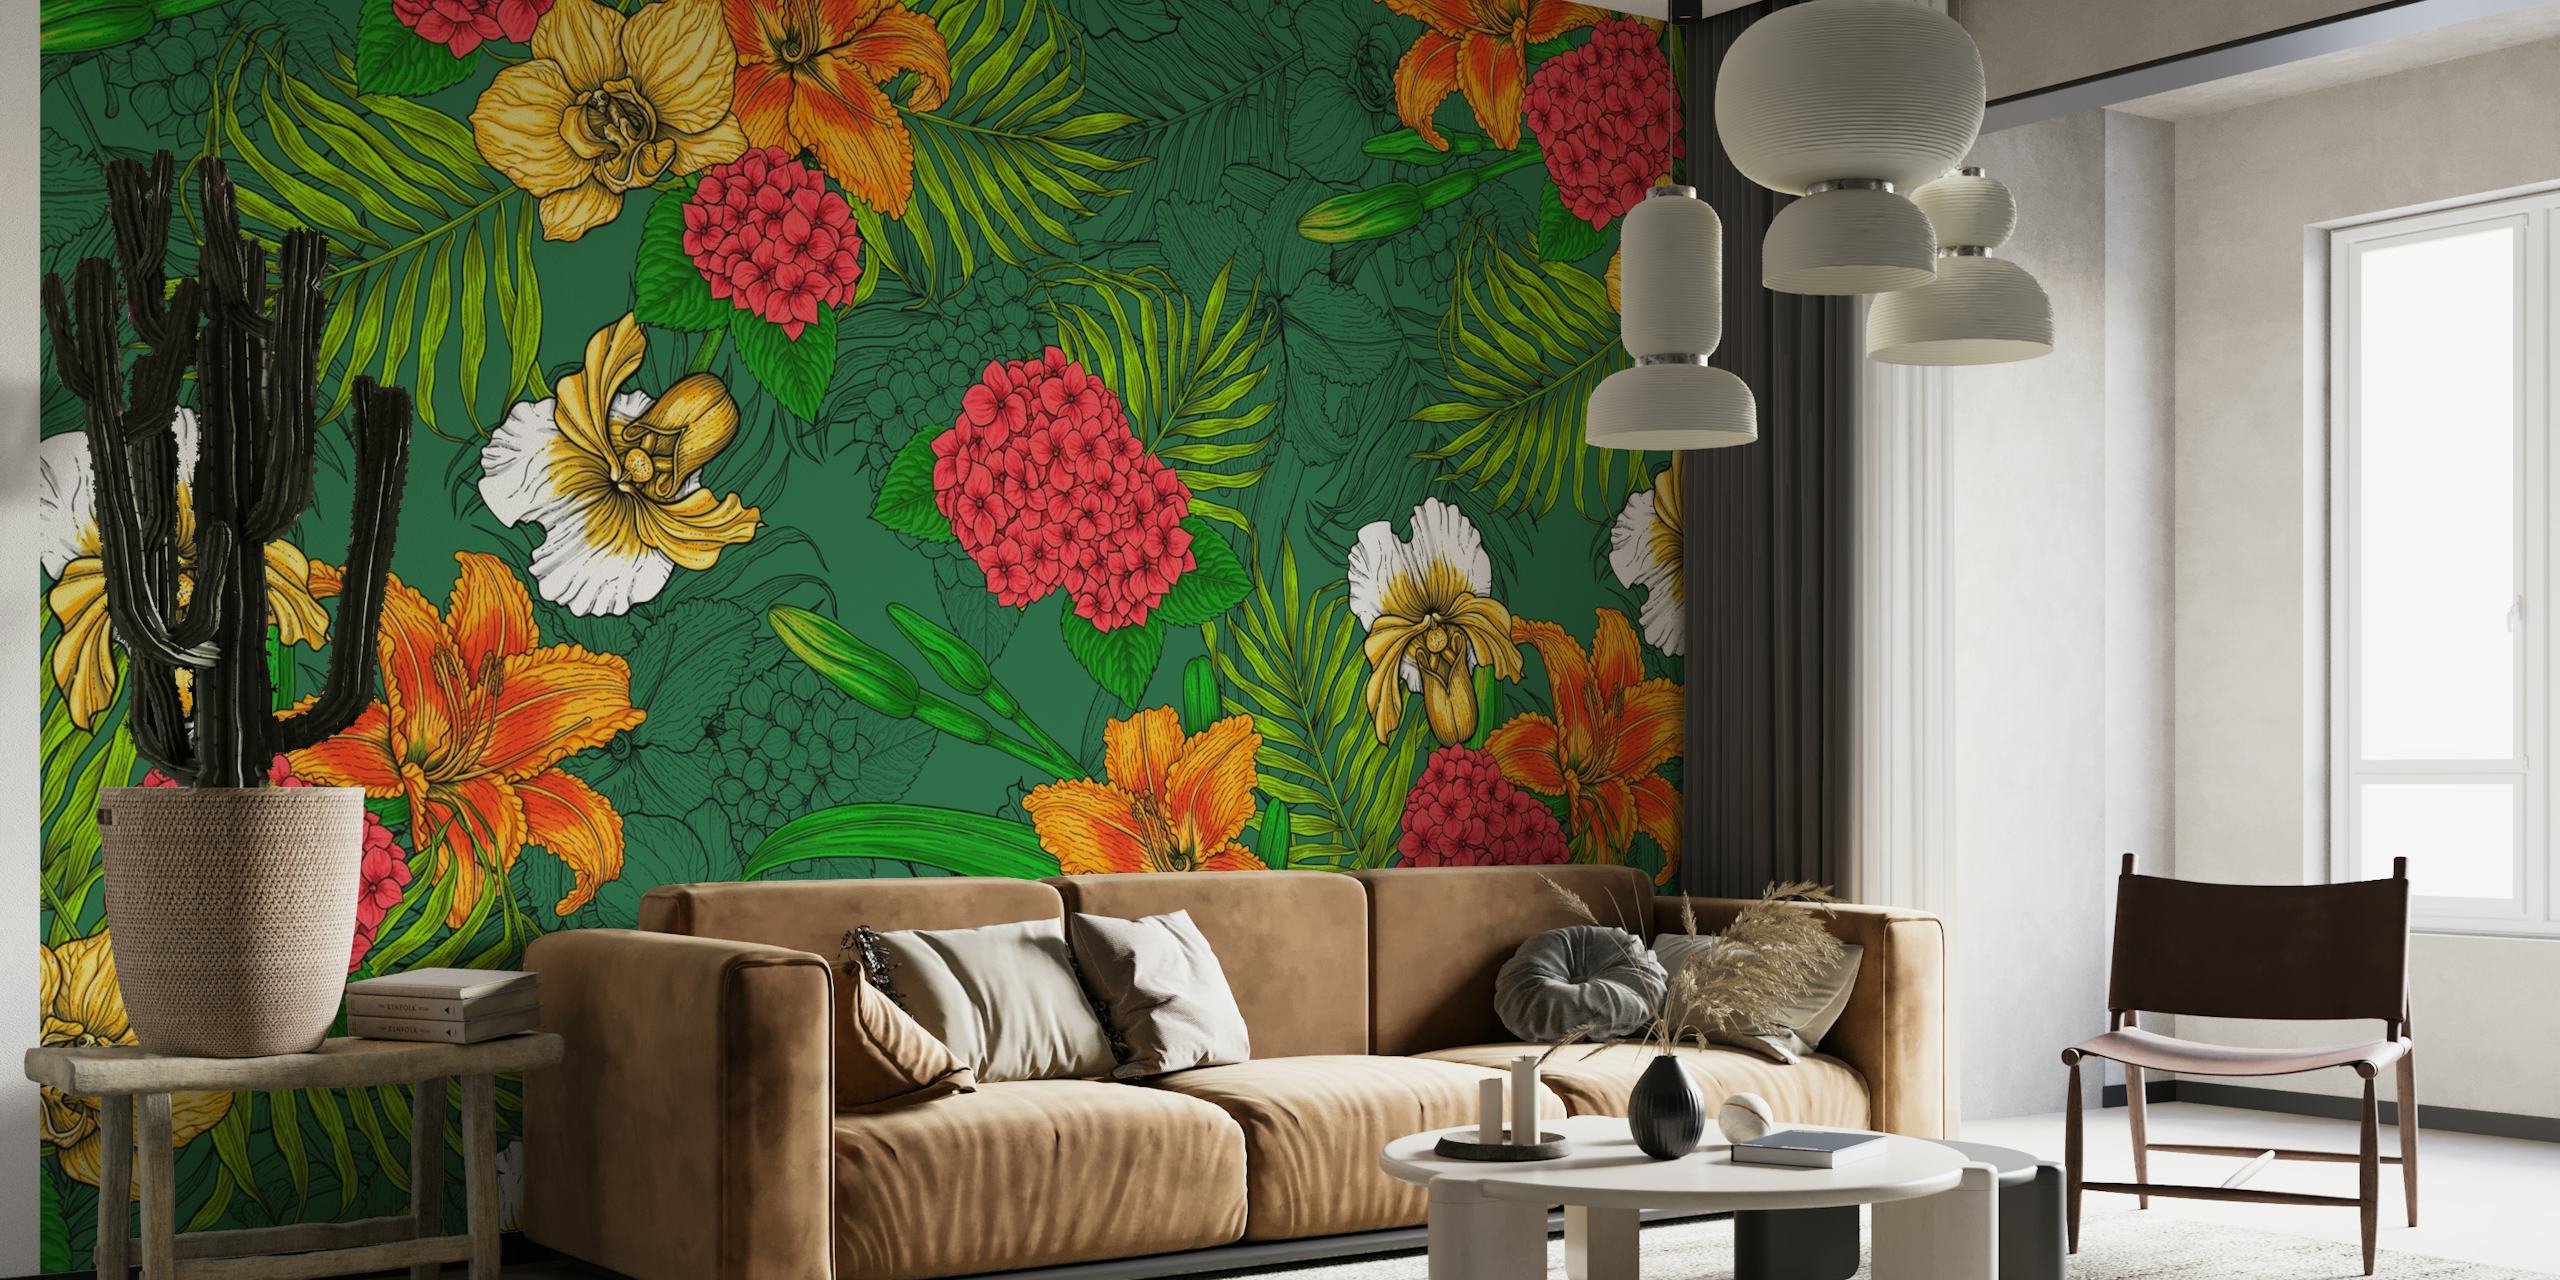 Lebendiges Wandbild mit tropischem Blumenmuster, orangefarbenen und gelben Blüten und grünem Laub.